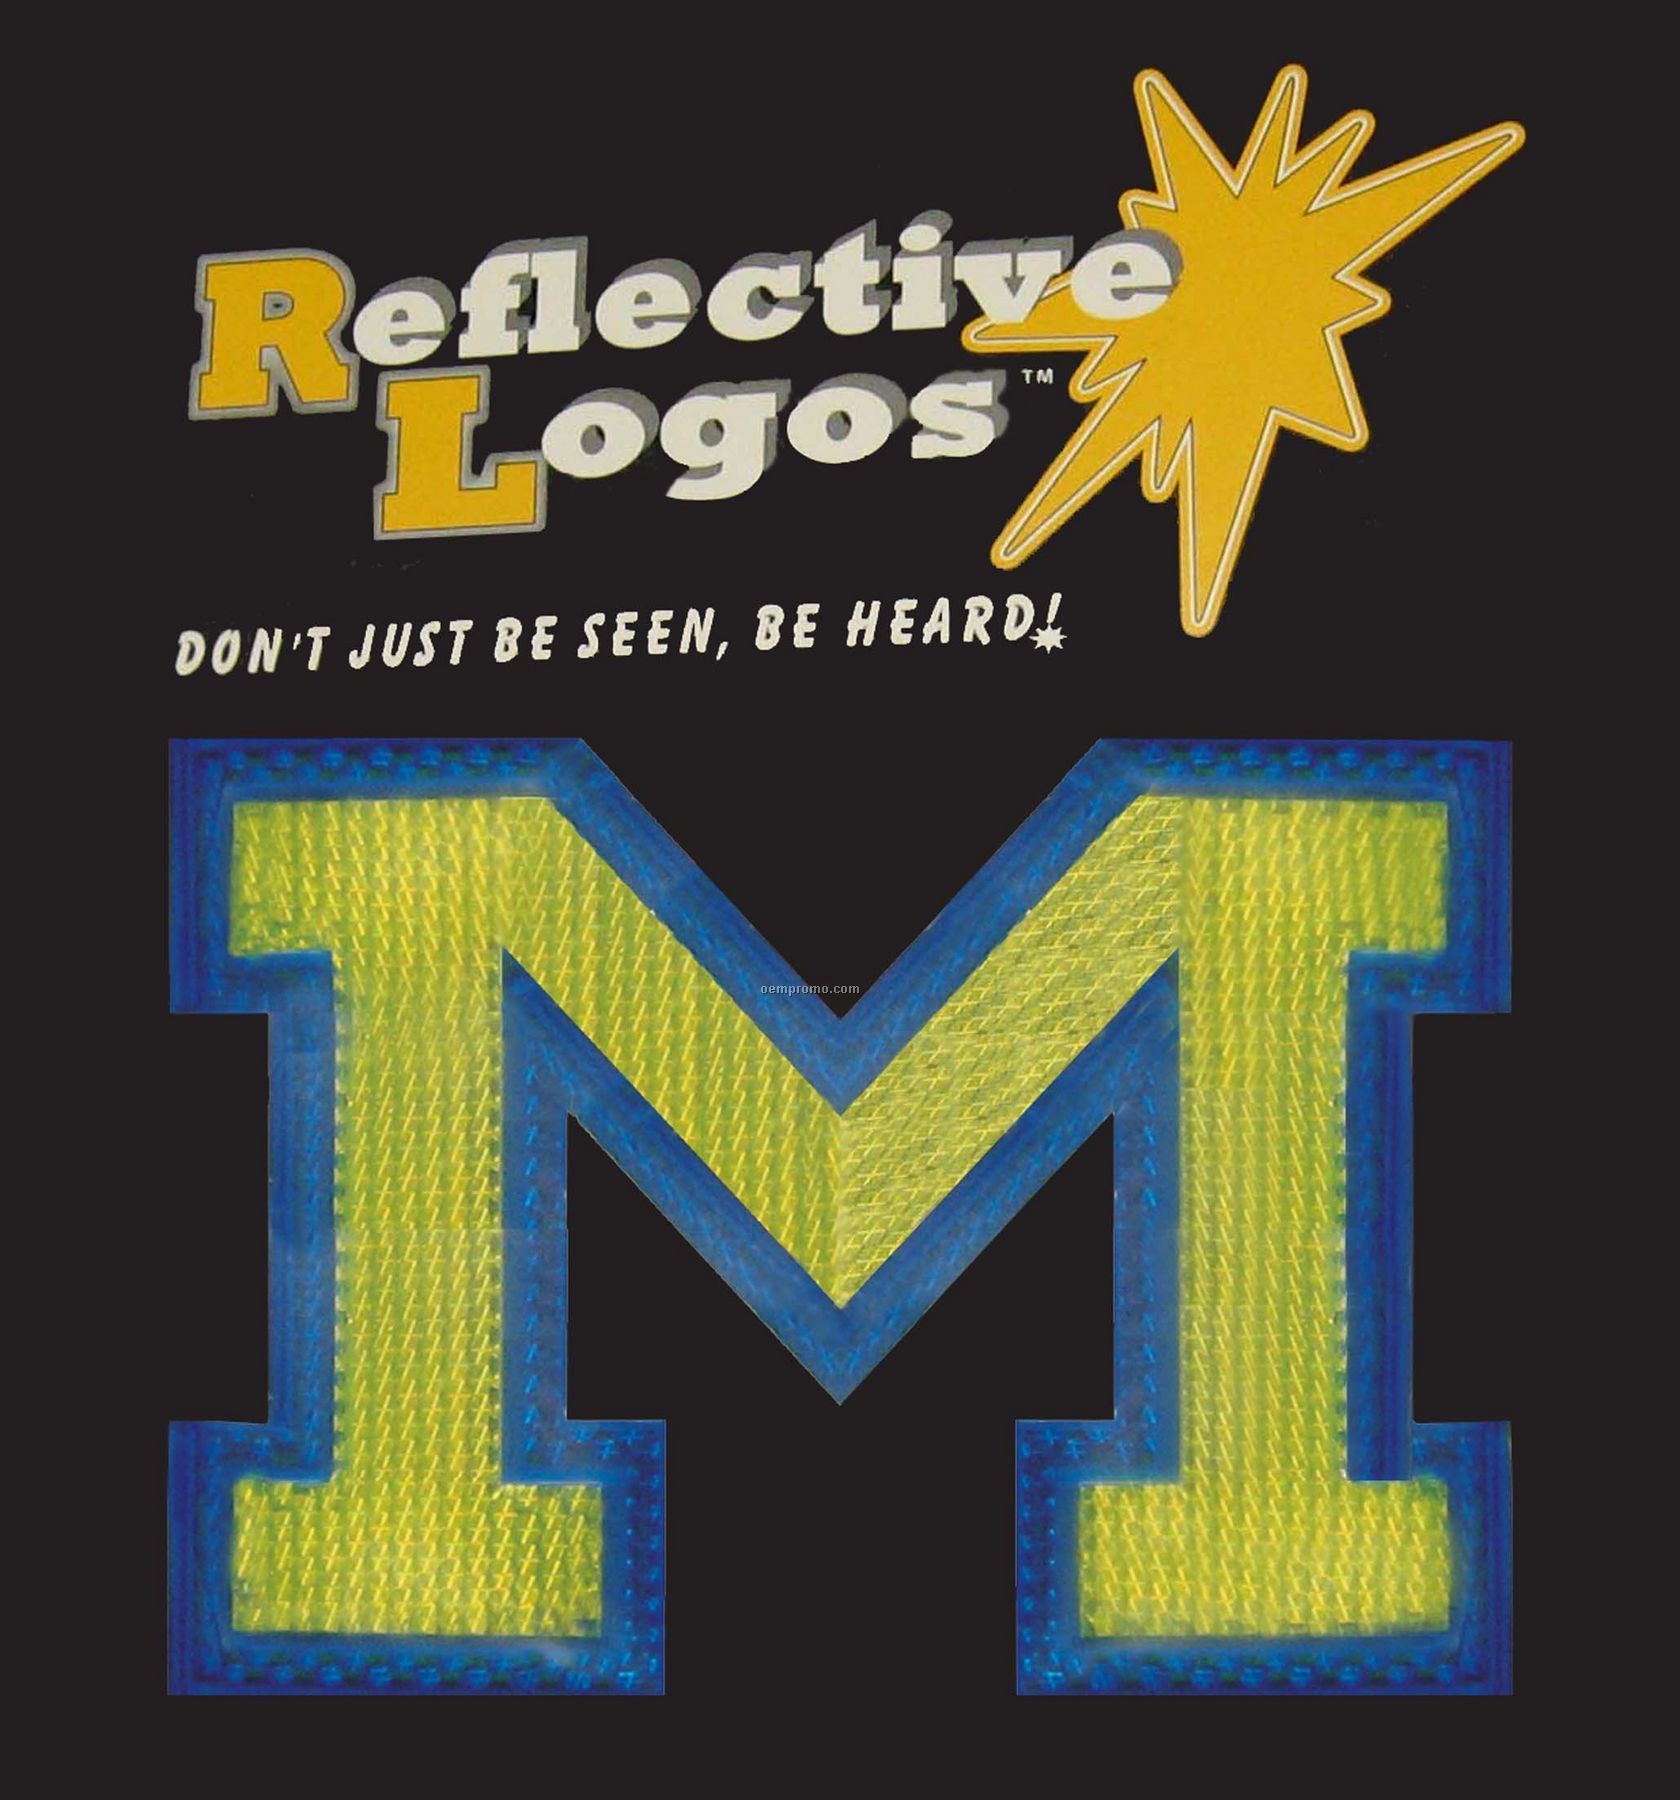 Custom Molded Reflective Logos